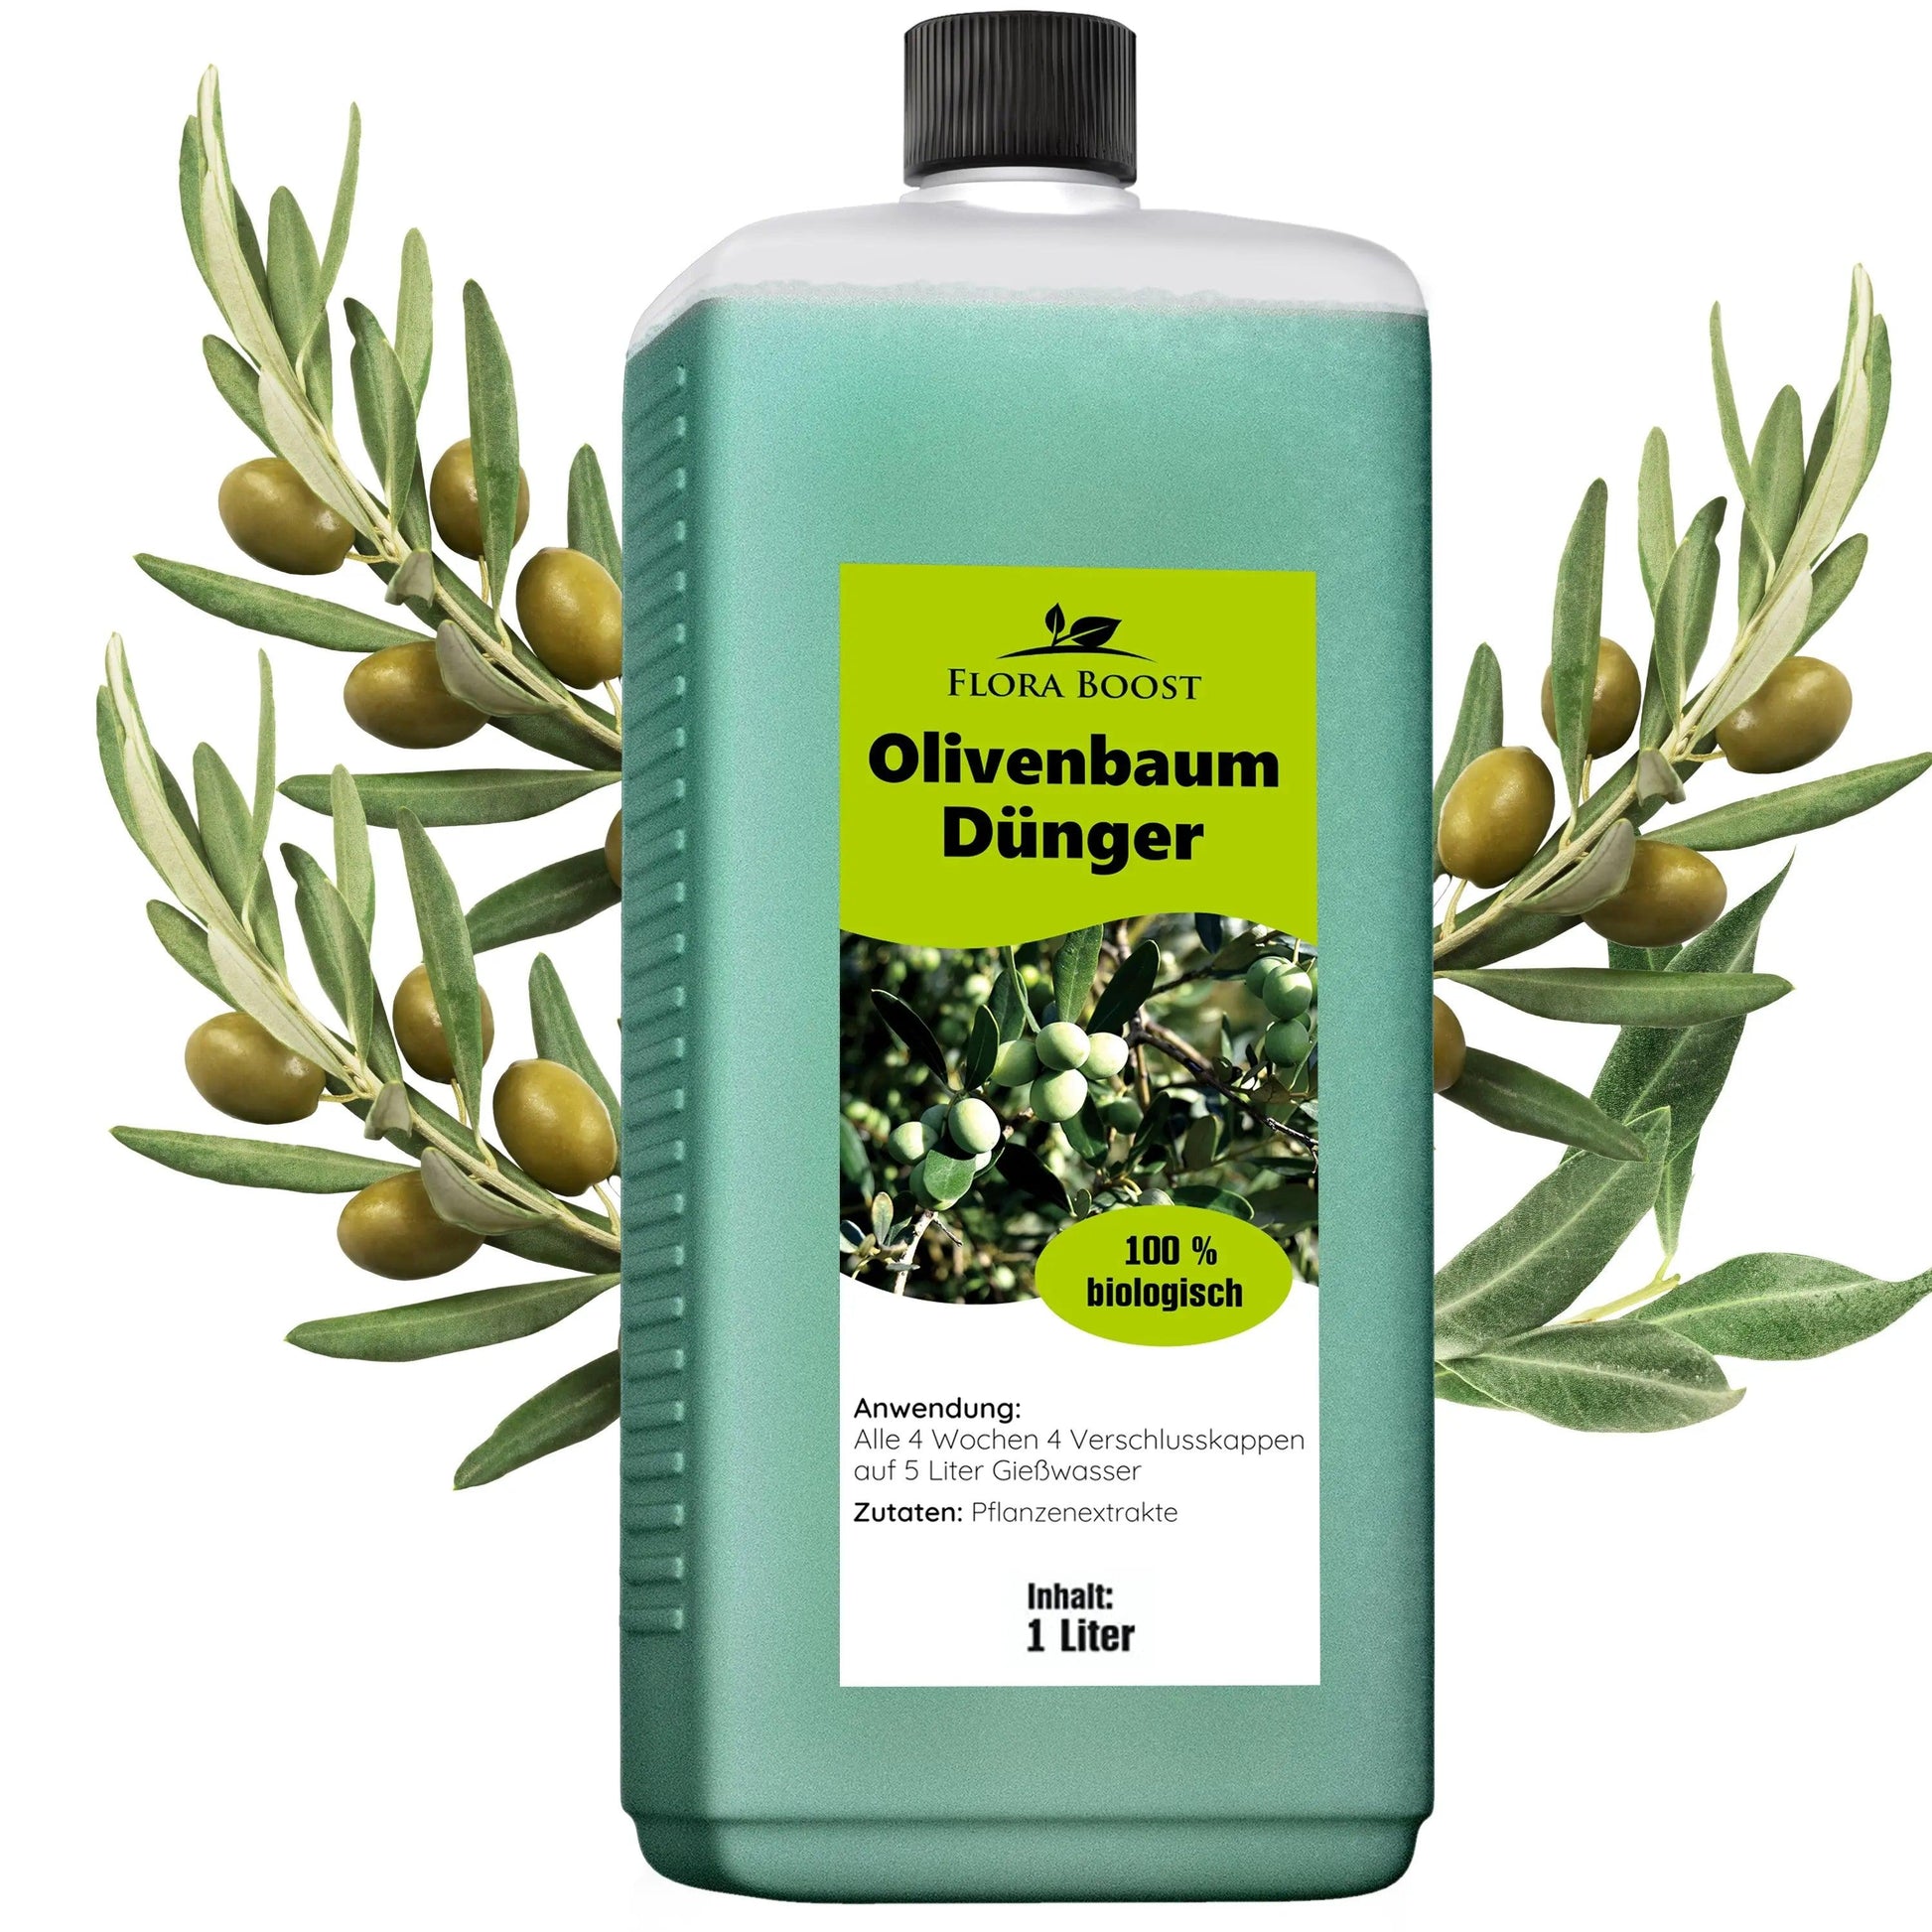 Olivenbaum Dünger von Flora Boost - Flora Boost